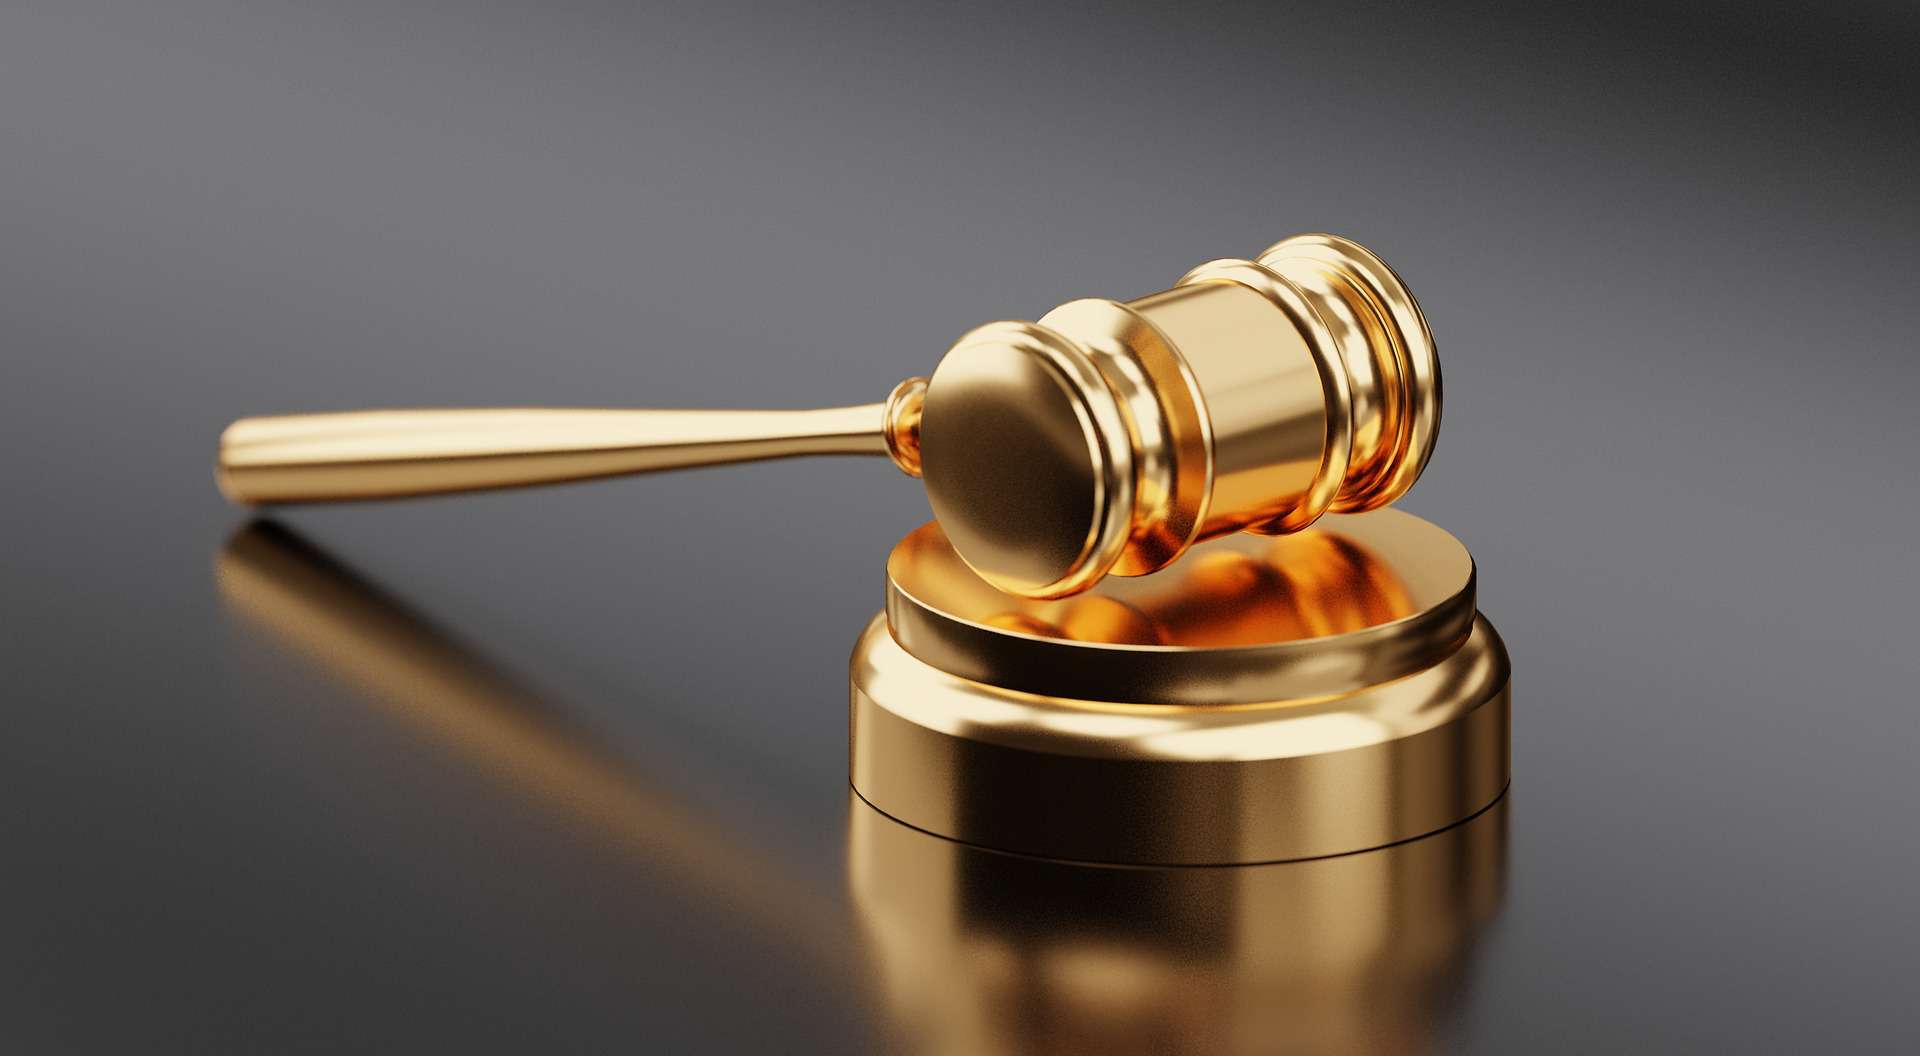 Kneppelhout advocaten Ondernemingsrecht - De Tijdelijke wet transparantie turboliquidatie - de huidige stand van zaken